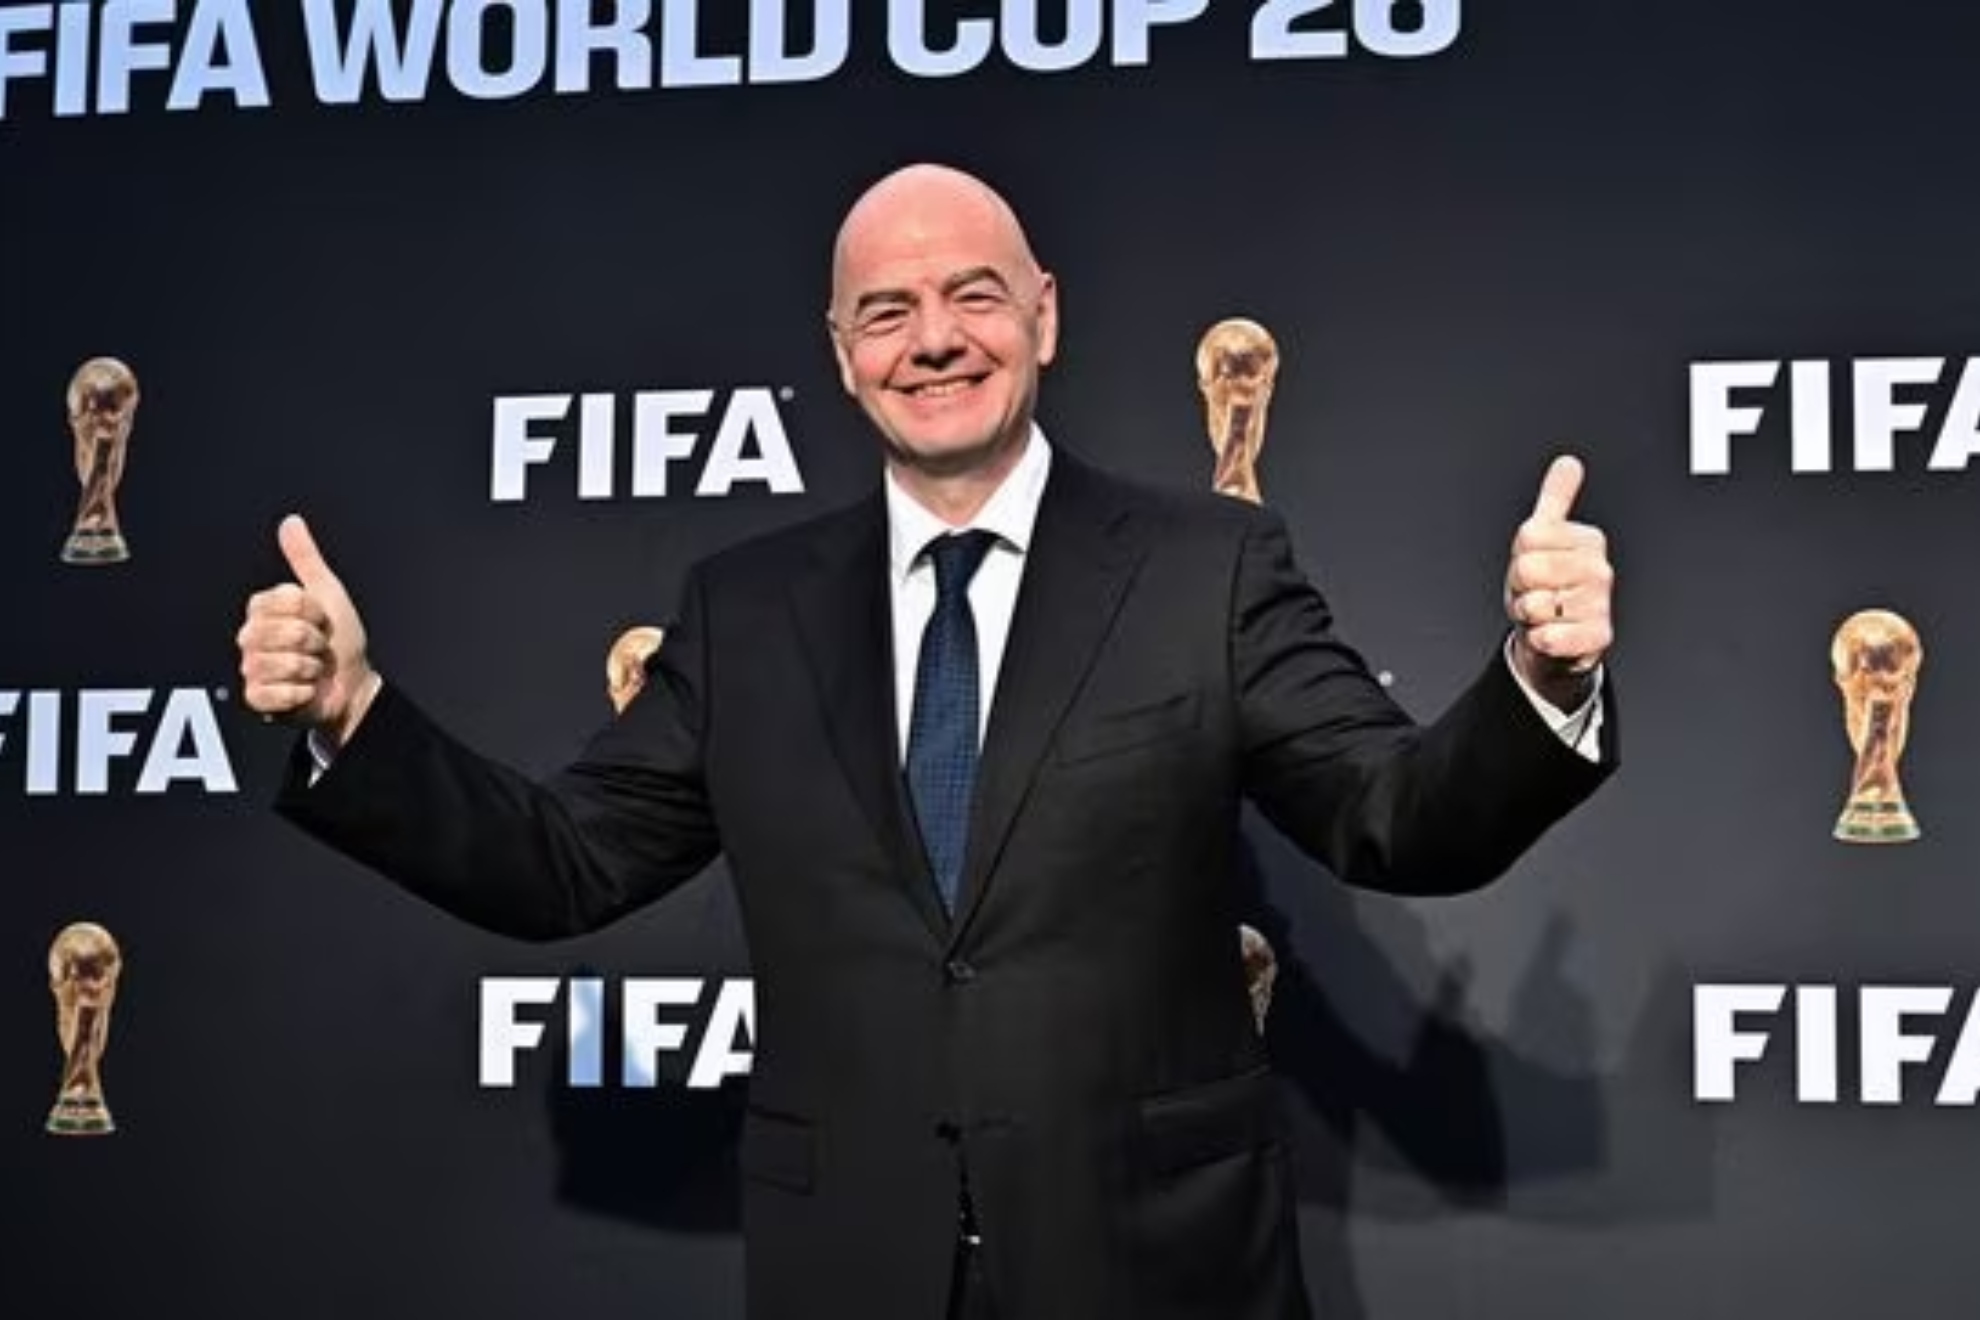 El Mundial renueva su marca y su logo para el Mundial de 2026